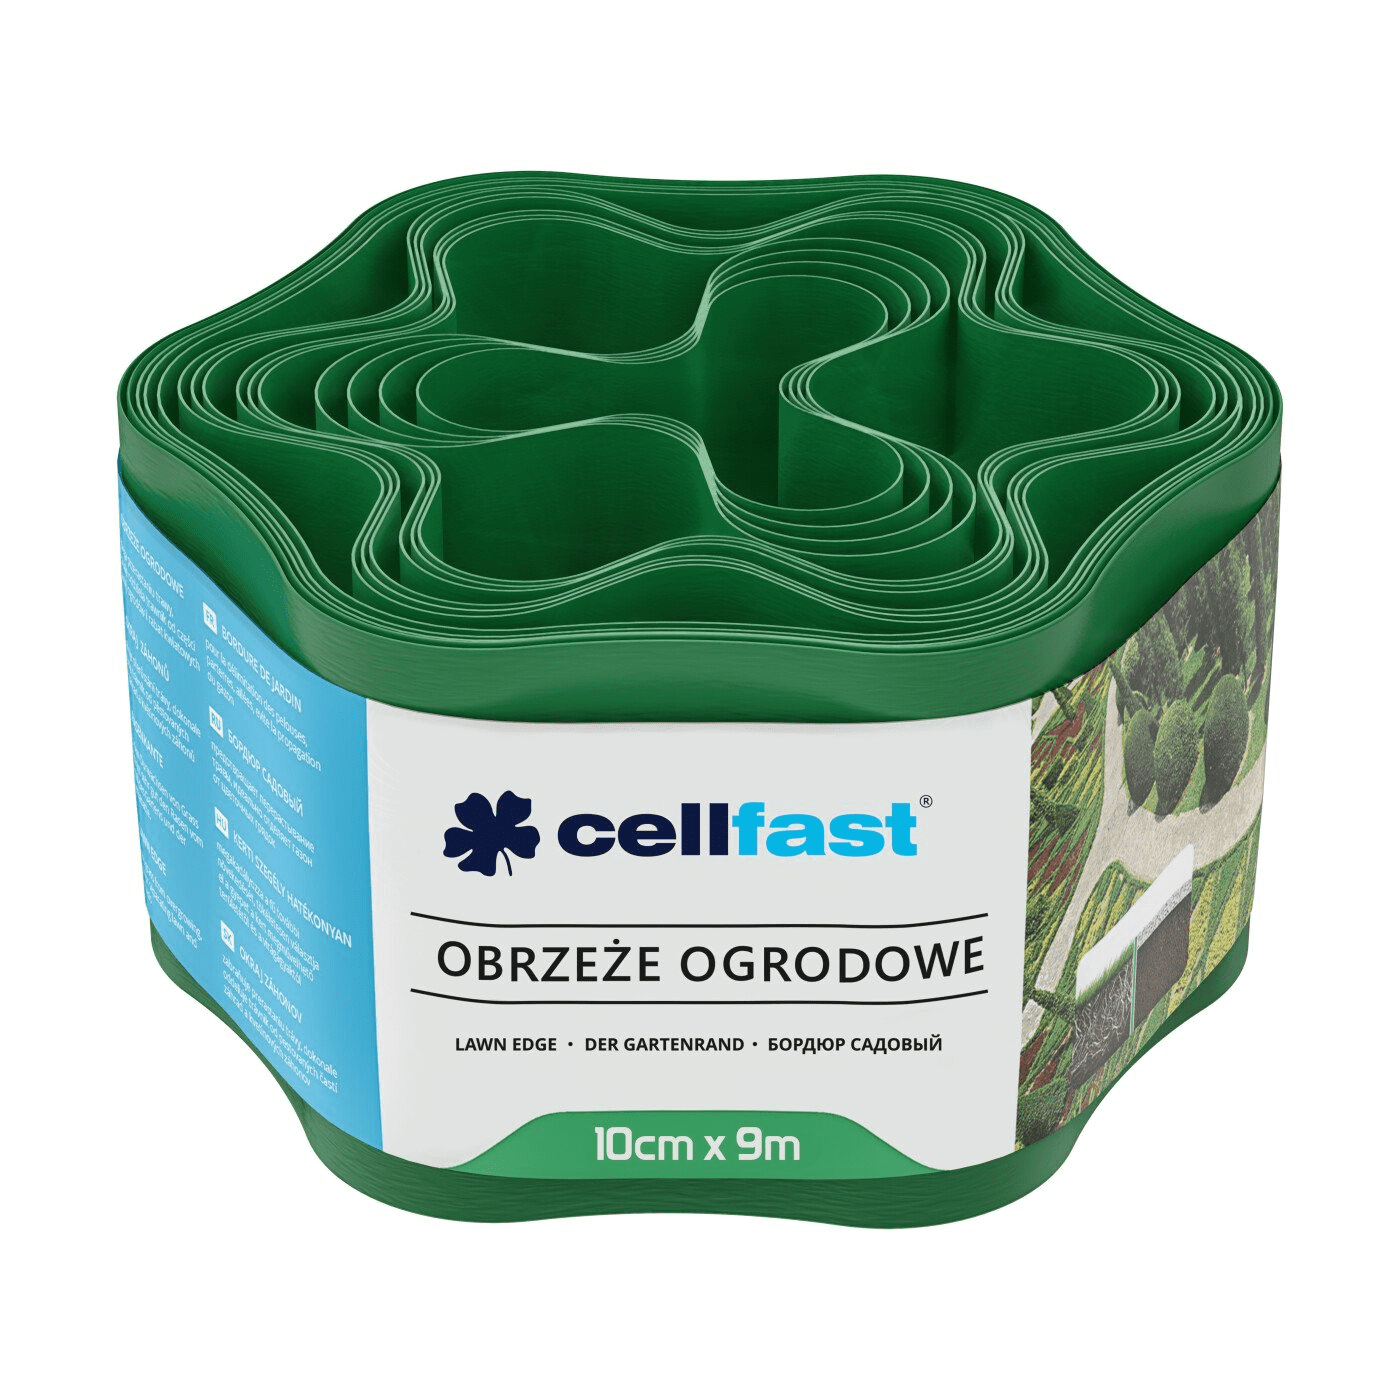 Cellfast Obrzeże Ogrodnicze 10cm x 9m Zieleń